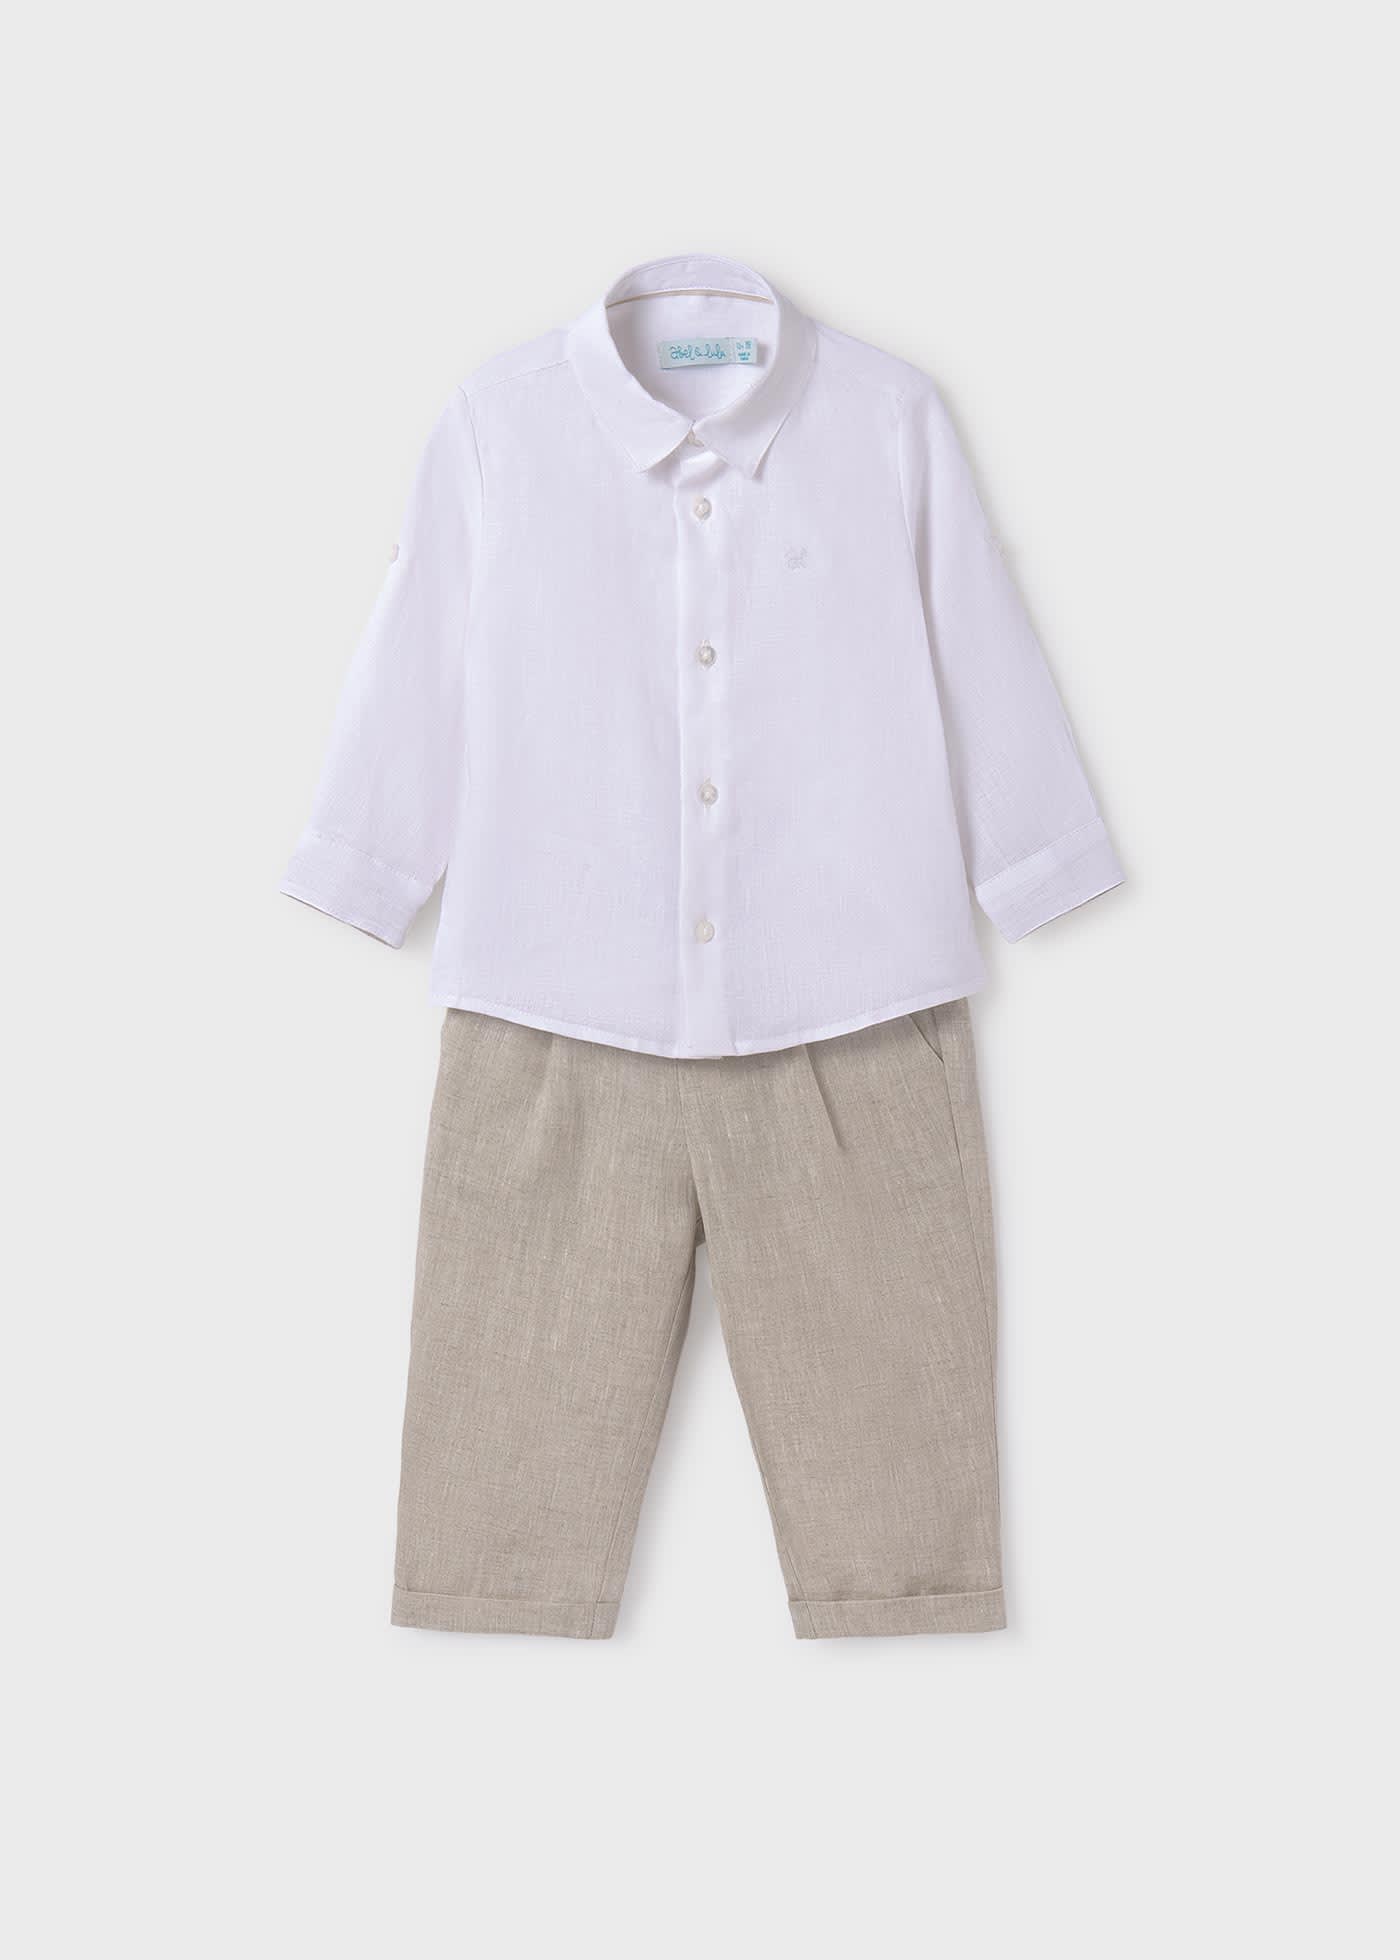 Completo camicia pantalone lino bambino